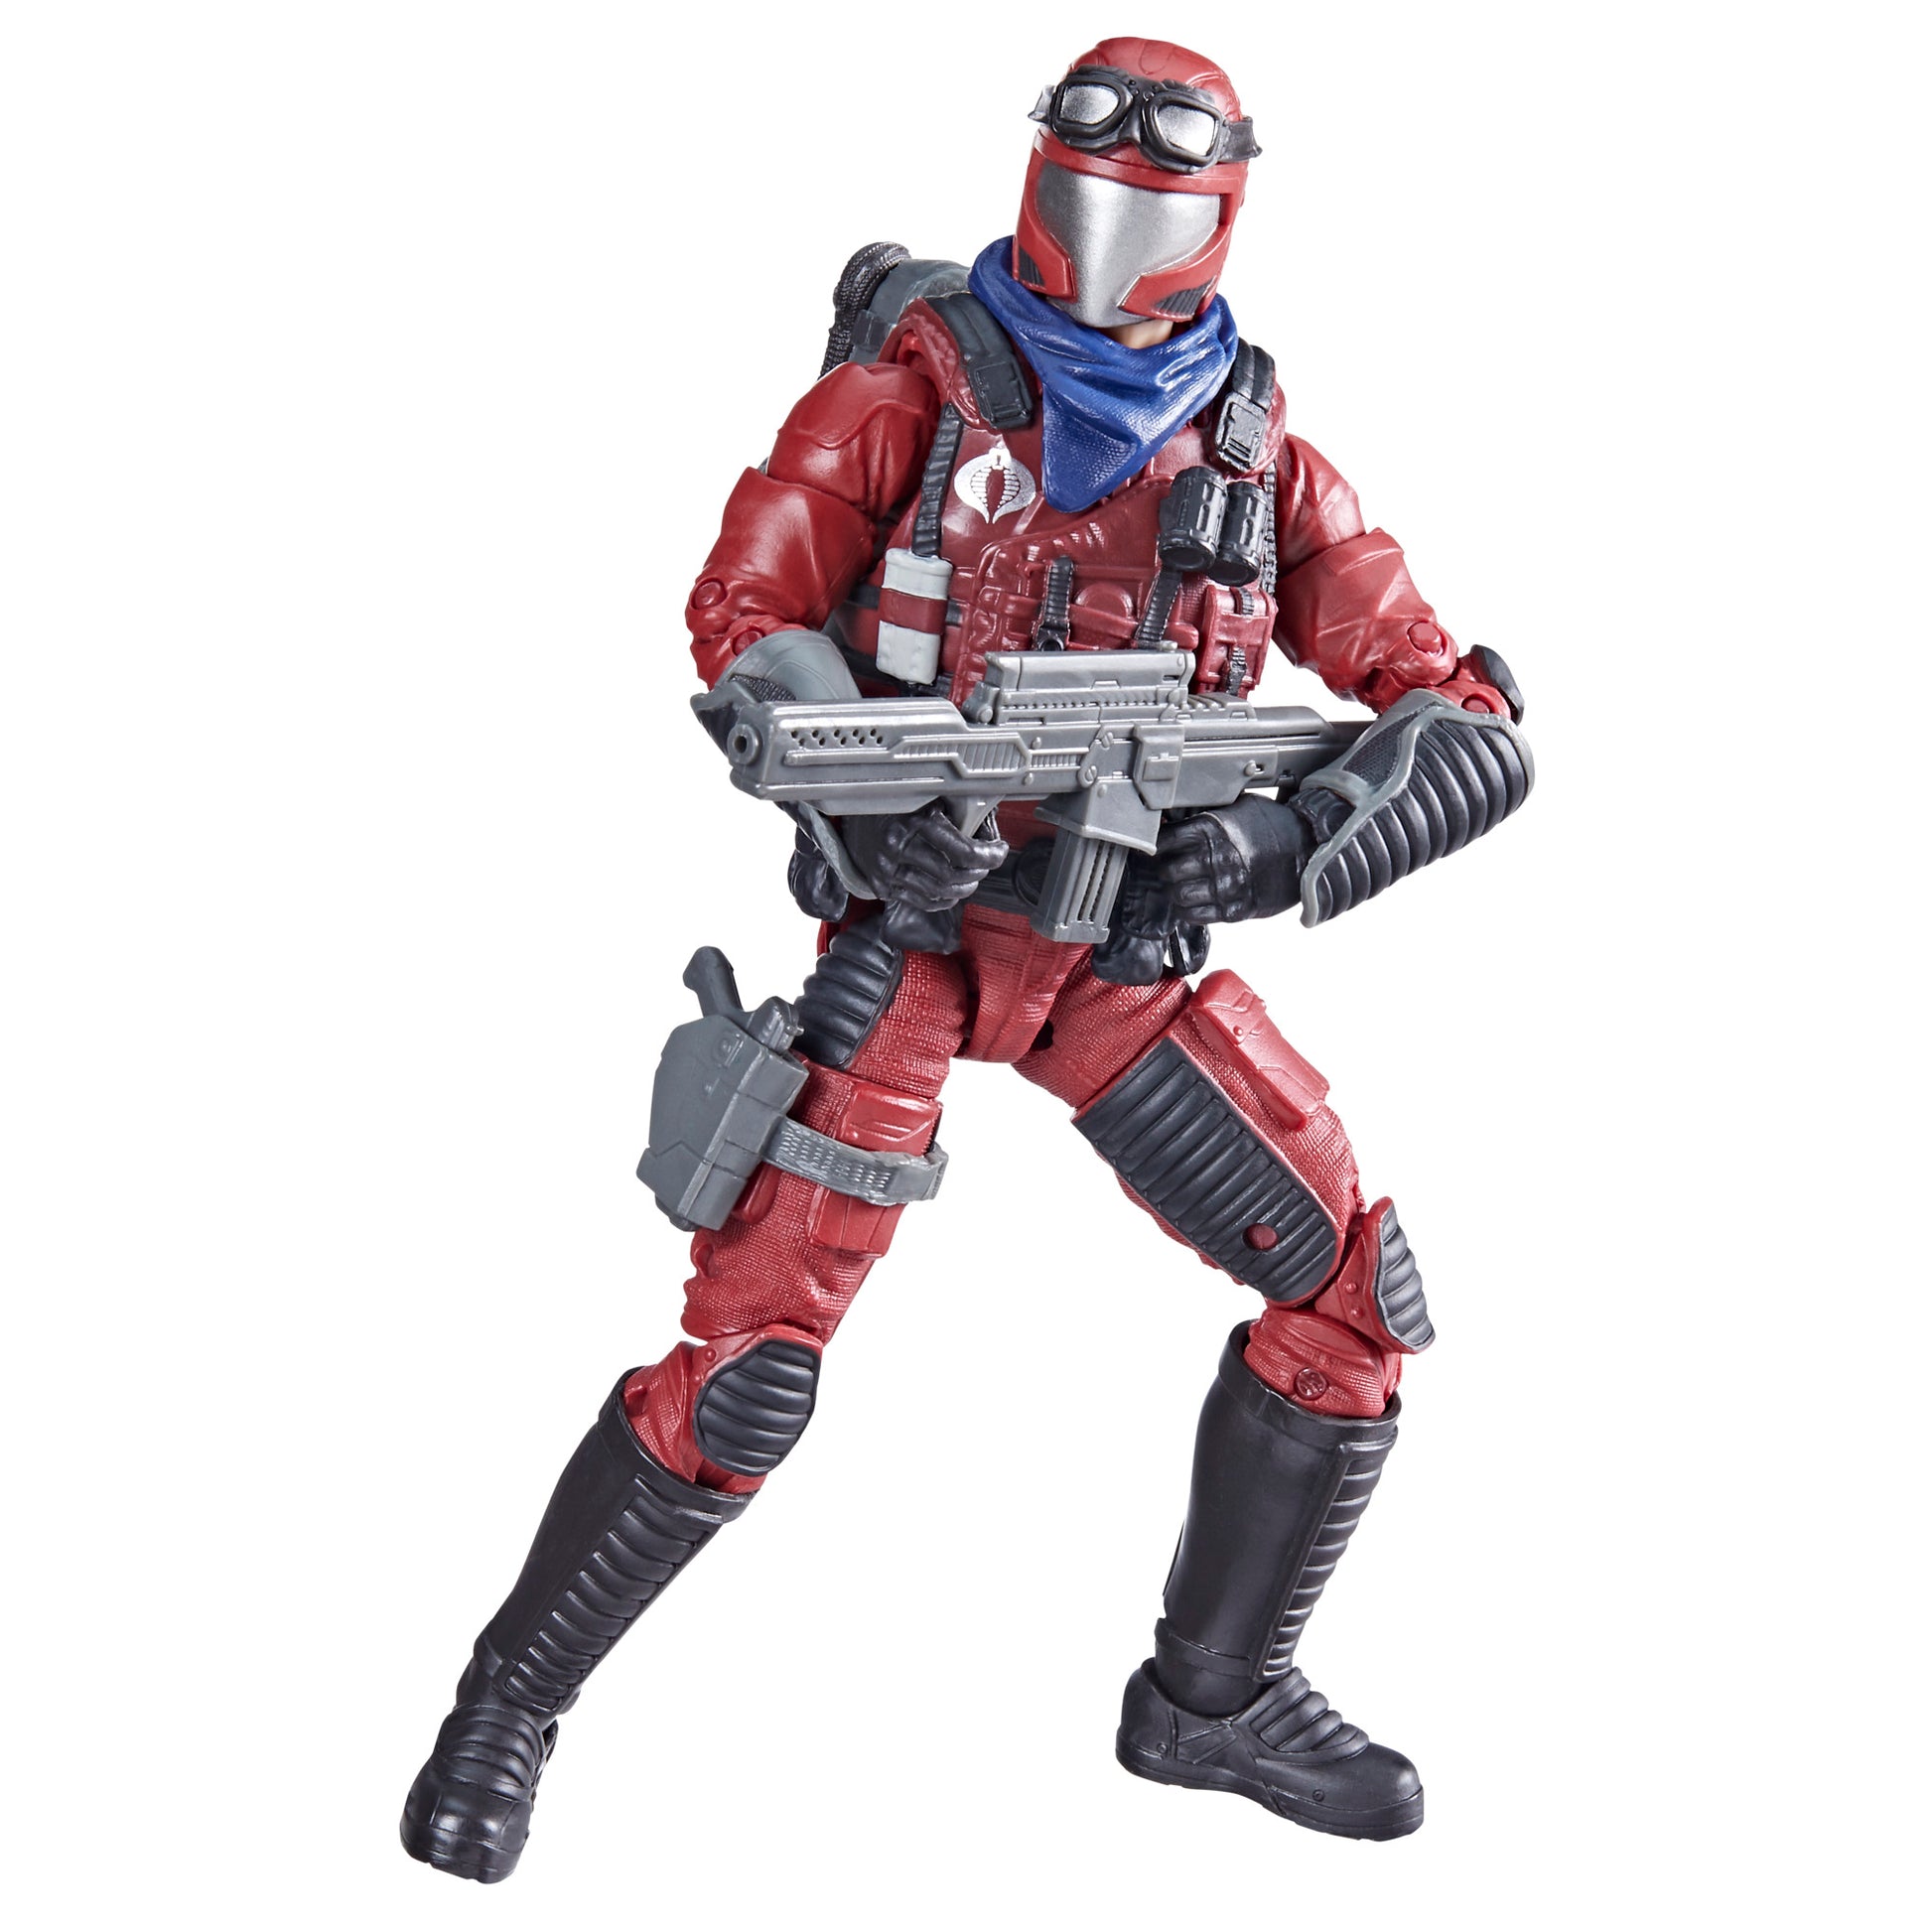 Crimson Viper Action figure with gun - Heretoserveyou